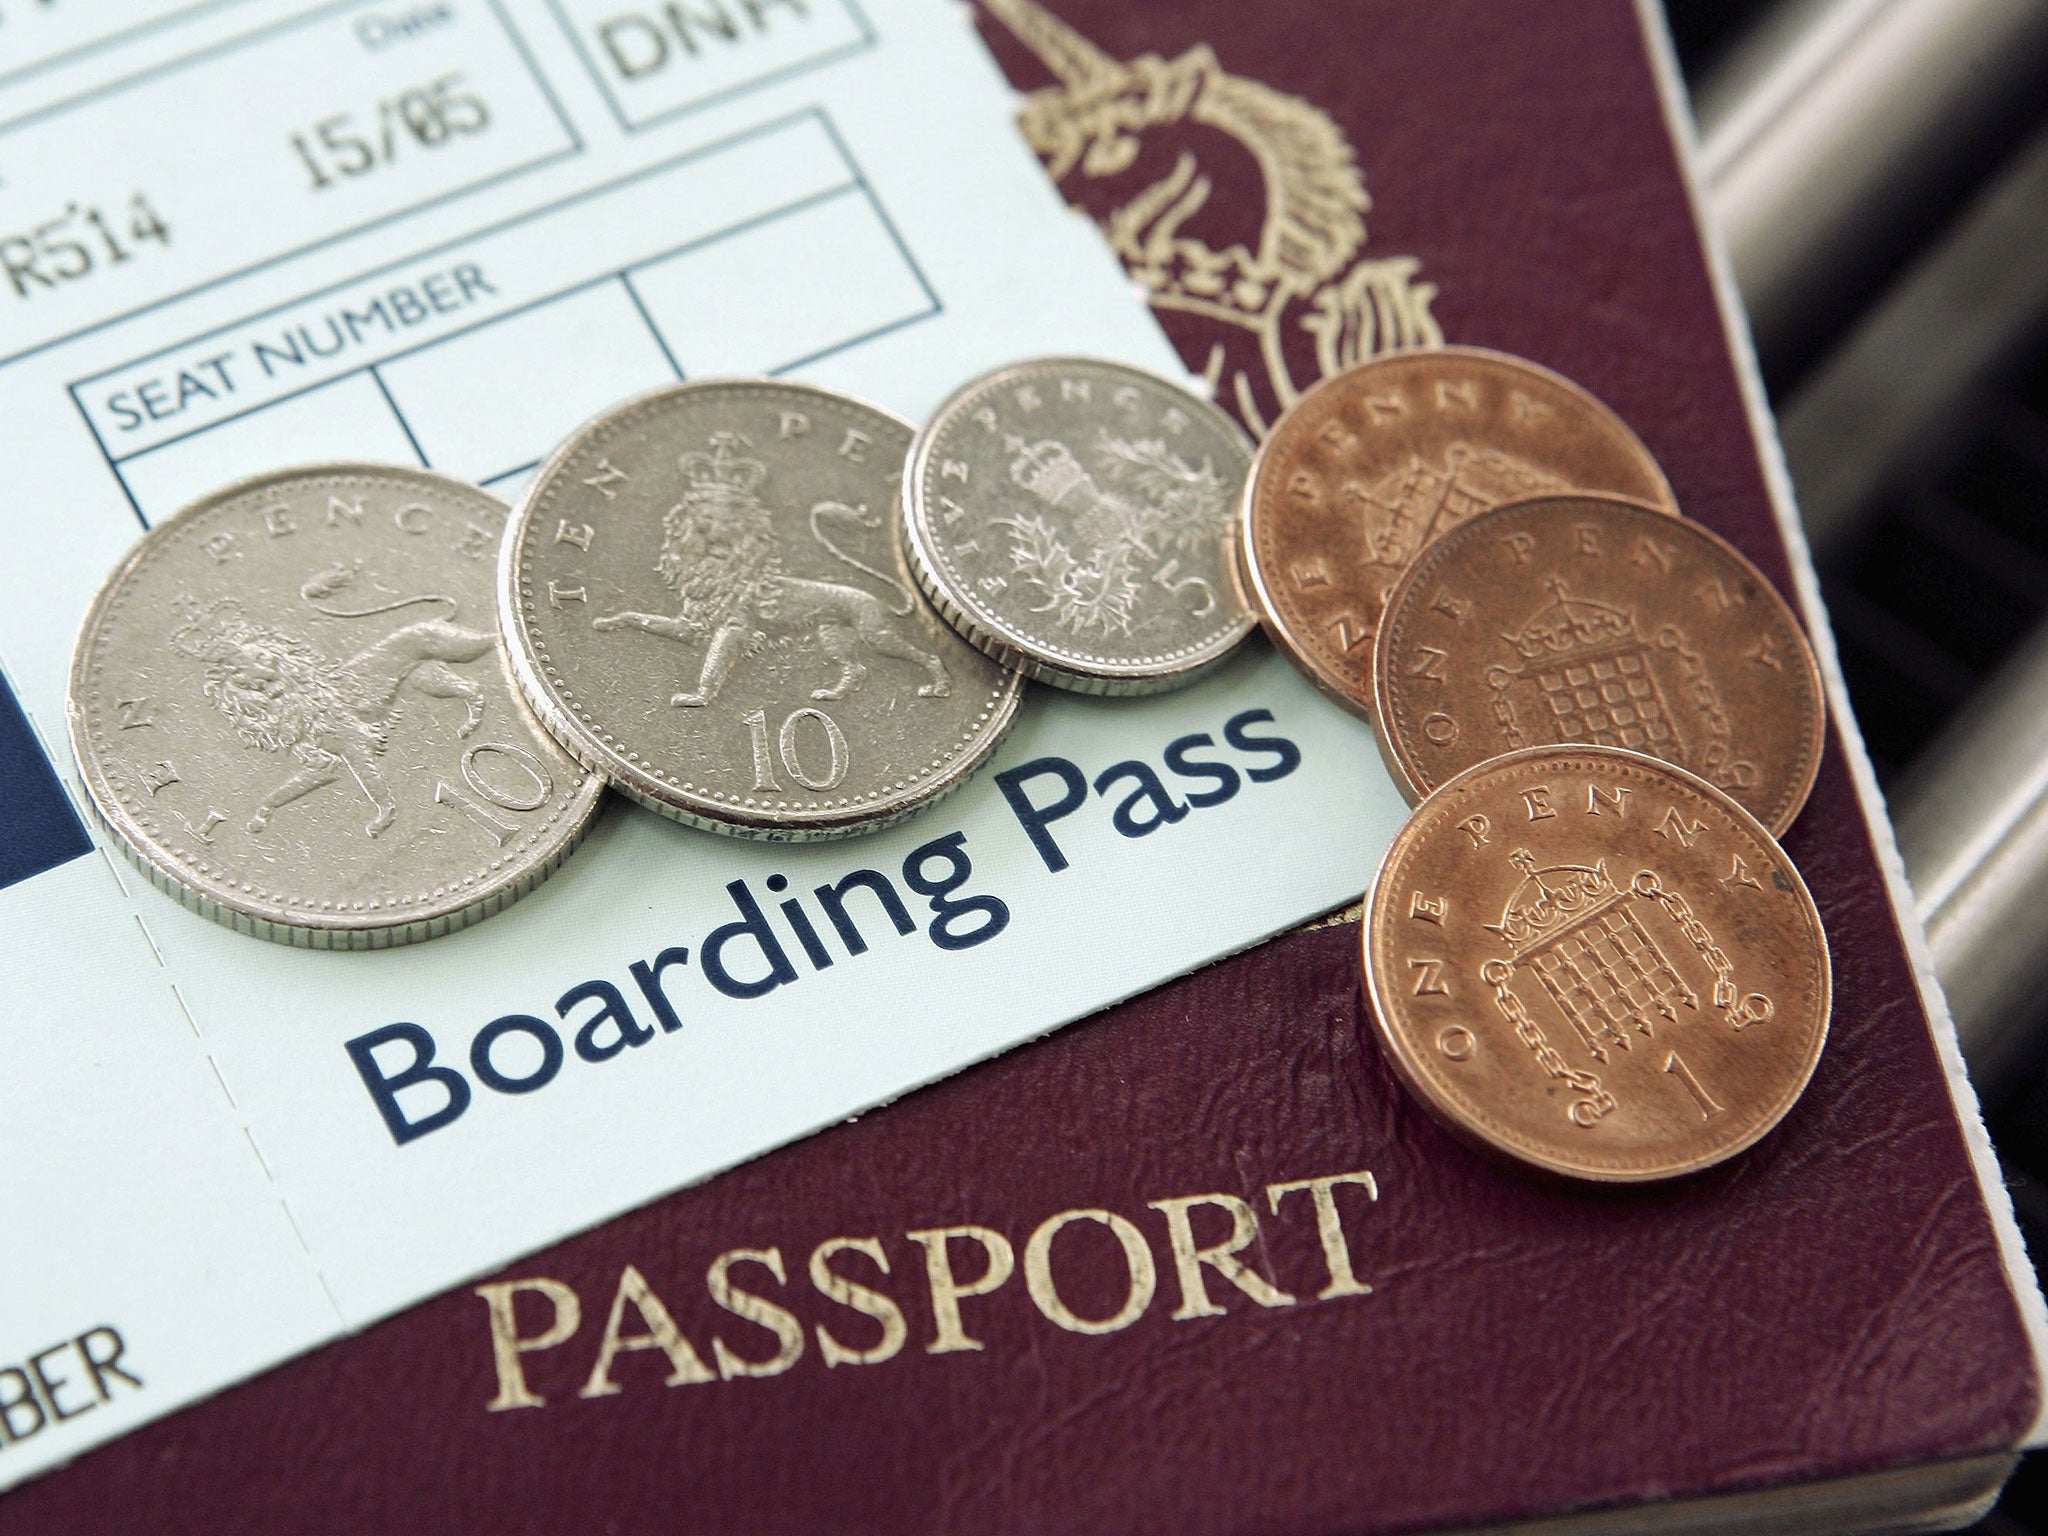 Twenty-three passports have been seized under legislation introduced last year